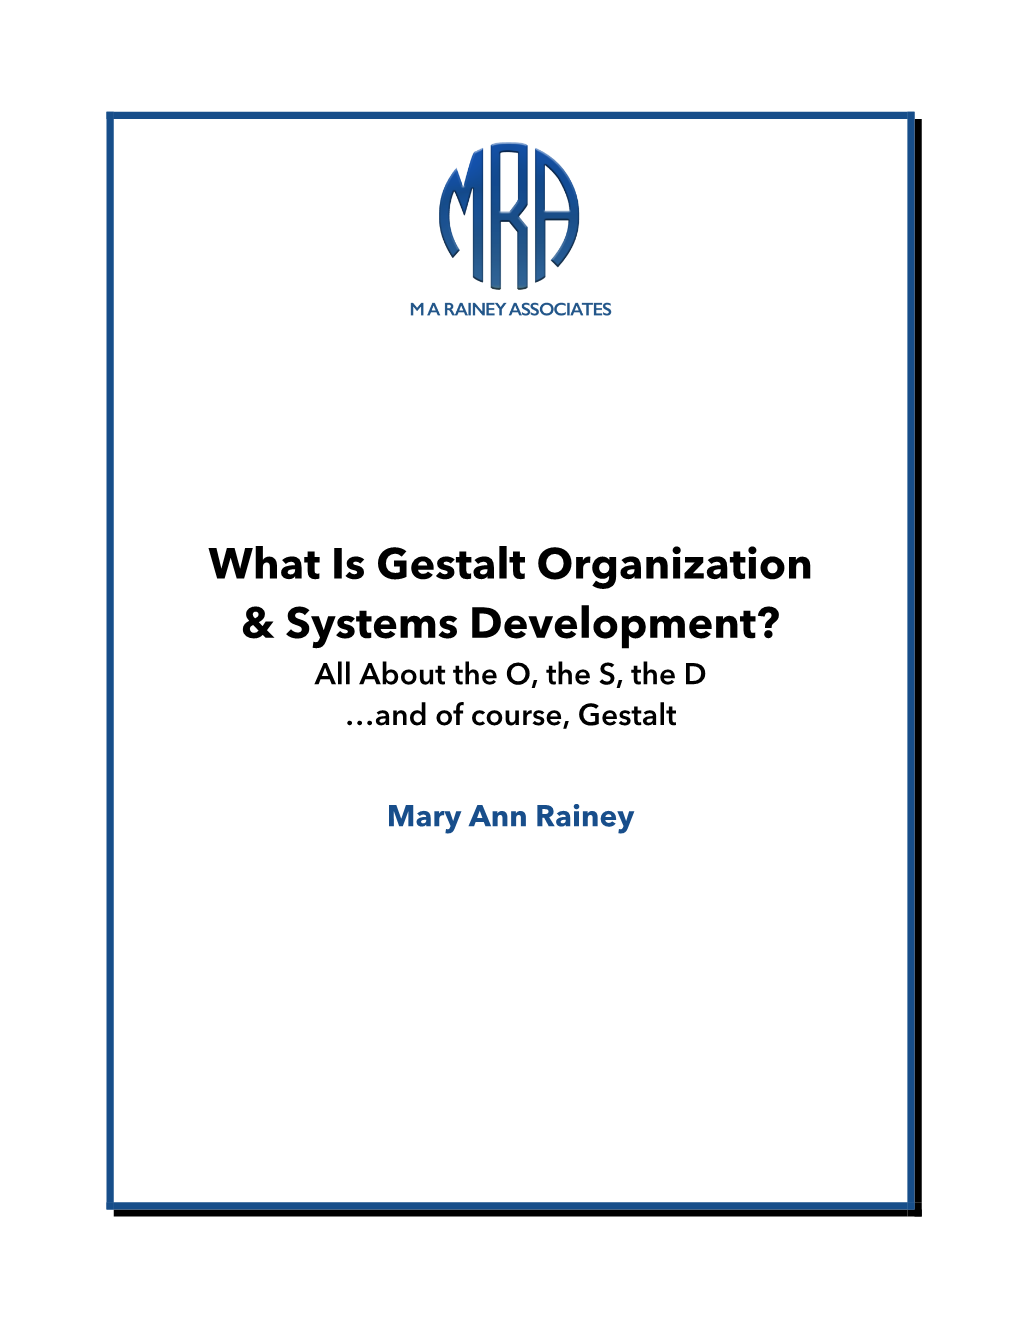 What Is Gestalt Organization & Systems Development?